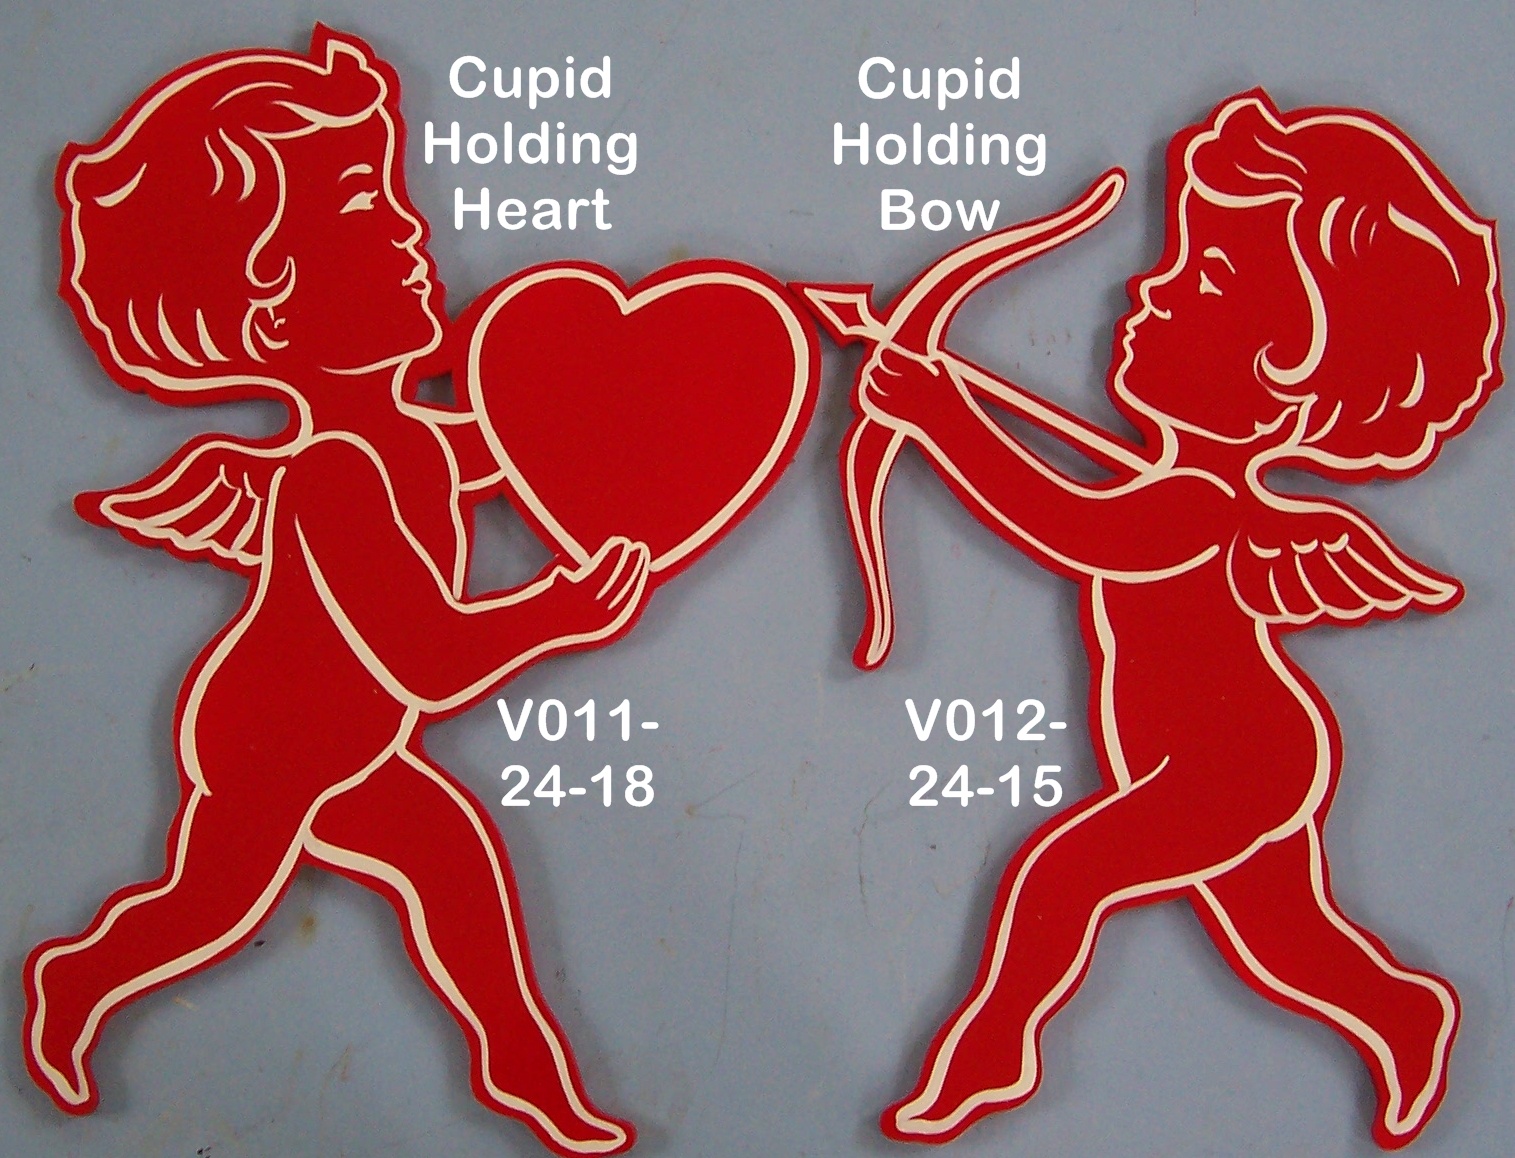 V011Cupid Holding Heart(on left)